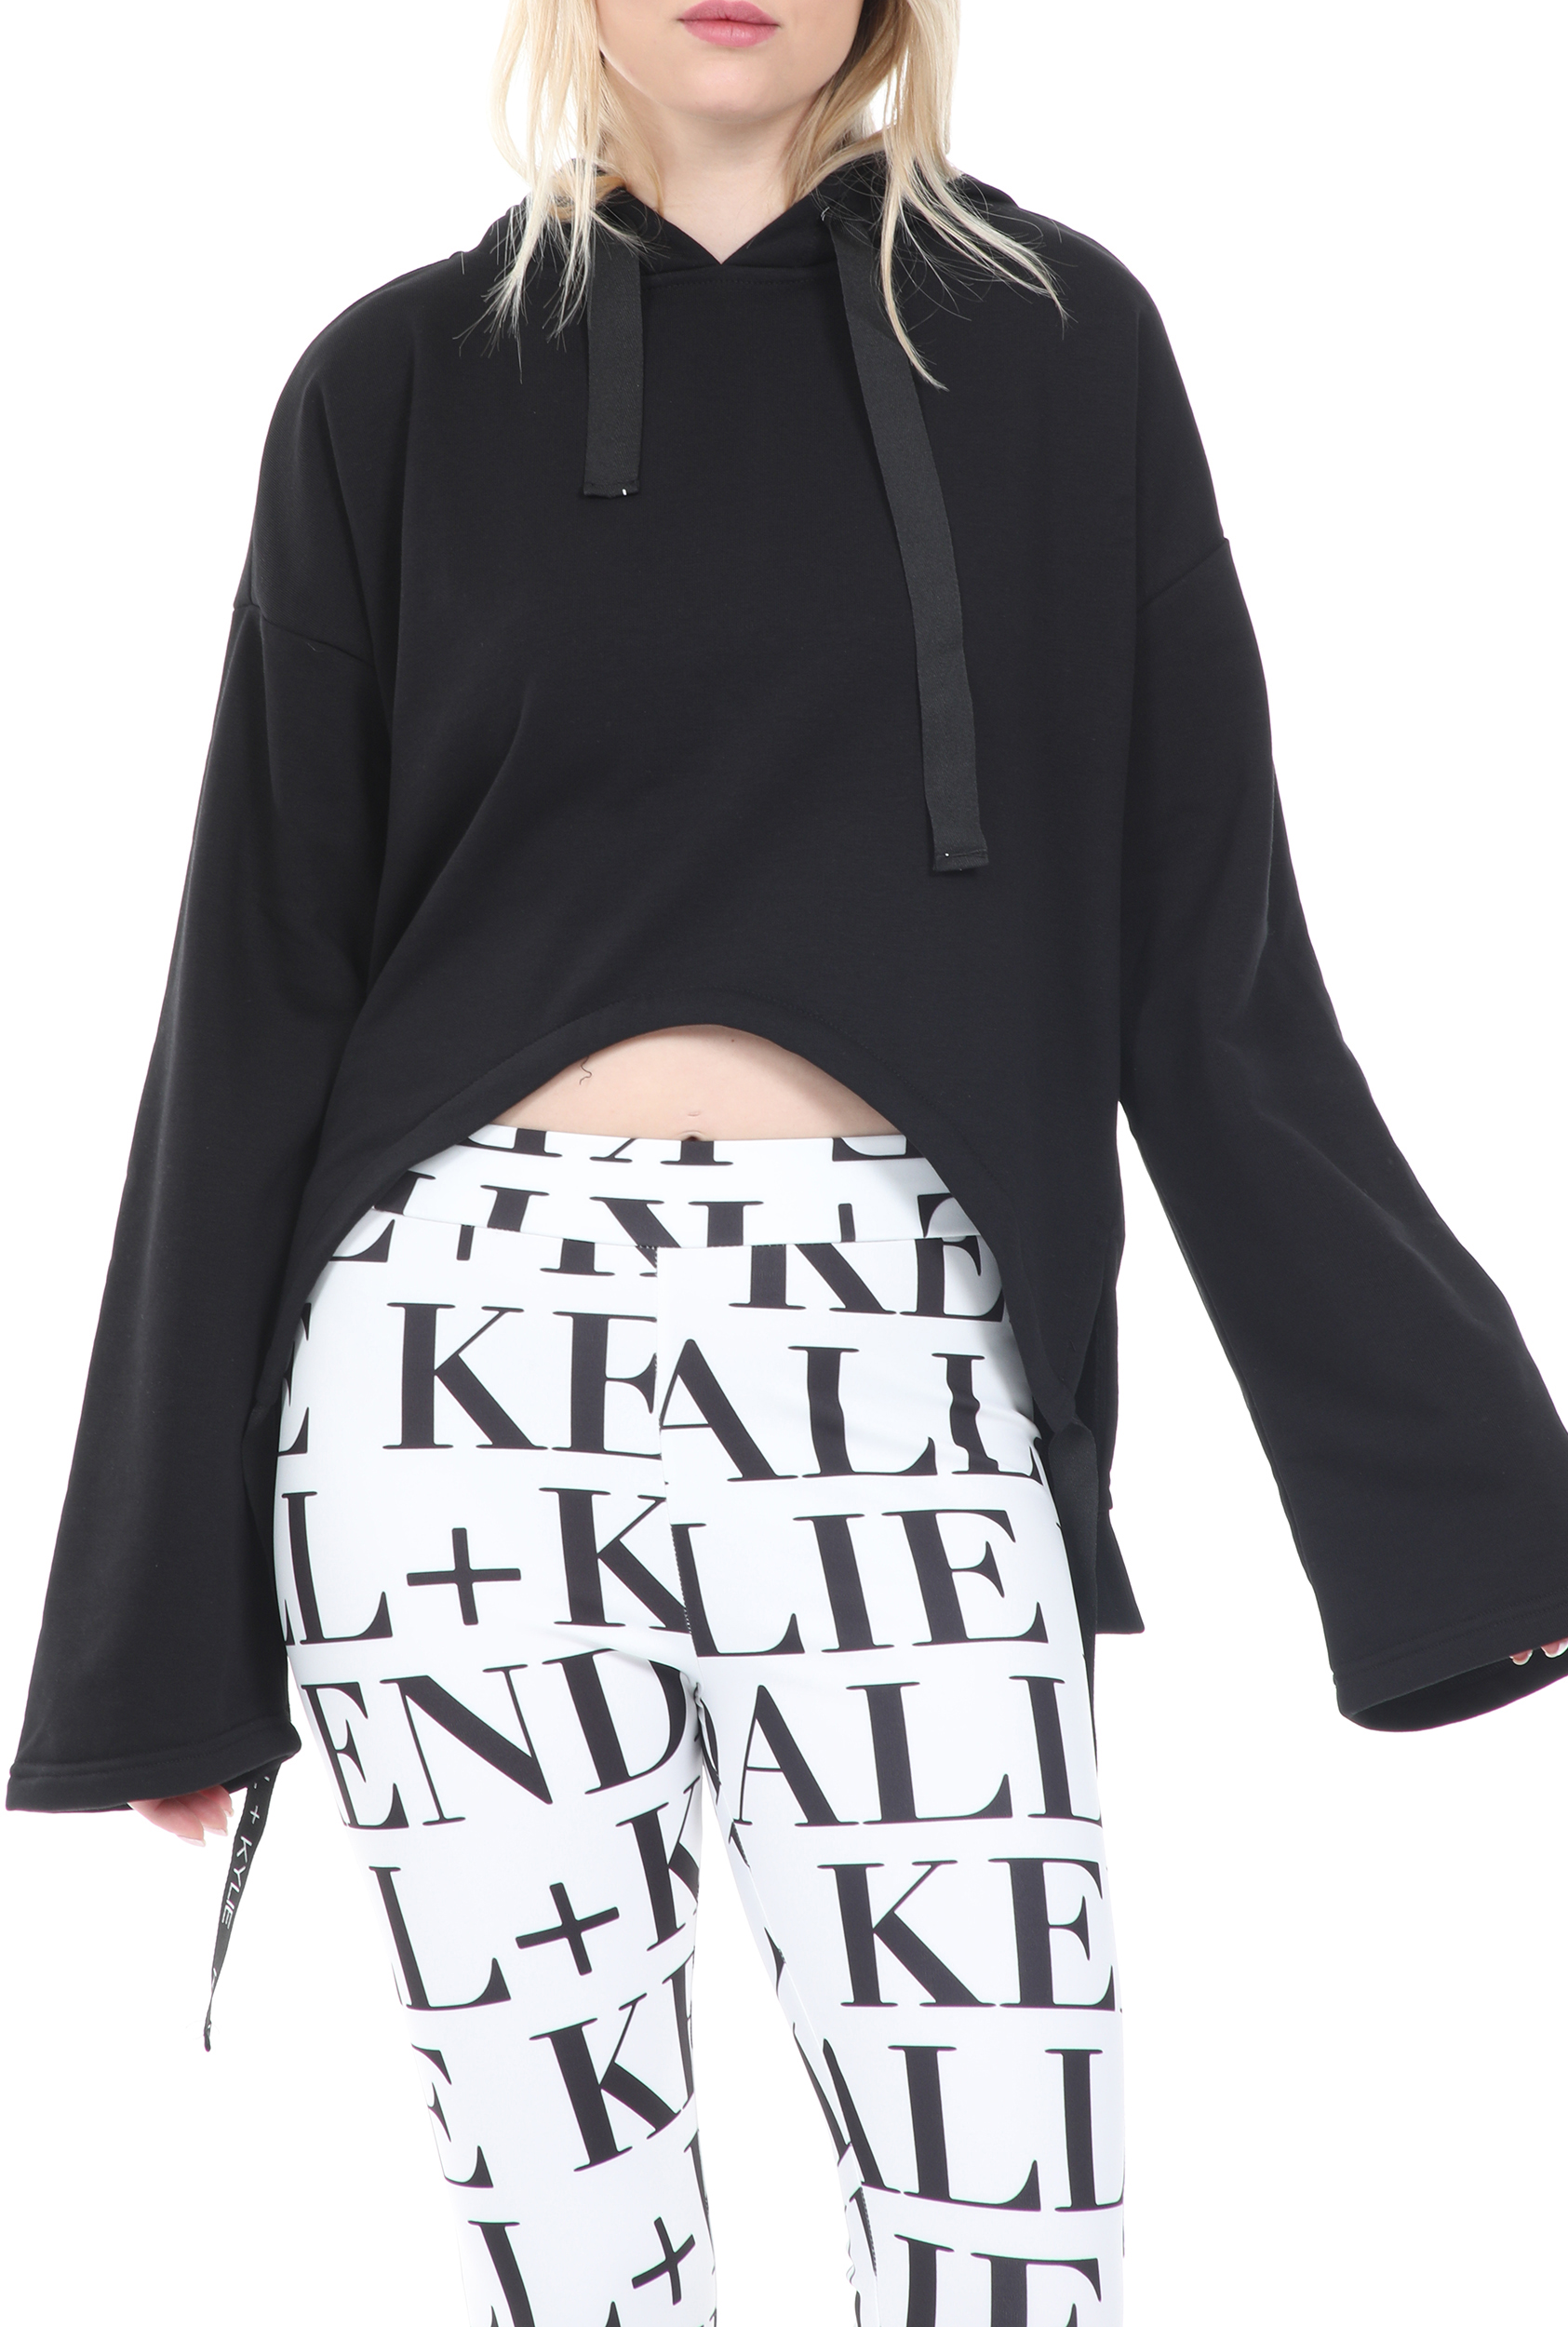 Γυναικεία/Ρούχα/Φούτερ/Μπλούζες KENDALL + KYLIE - Γυναικεία φούτερ μπλούζα KENDALL + KYLIE ACTIVE CROPPED HOODED μαύρη